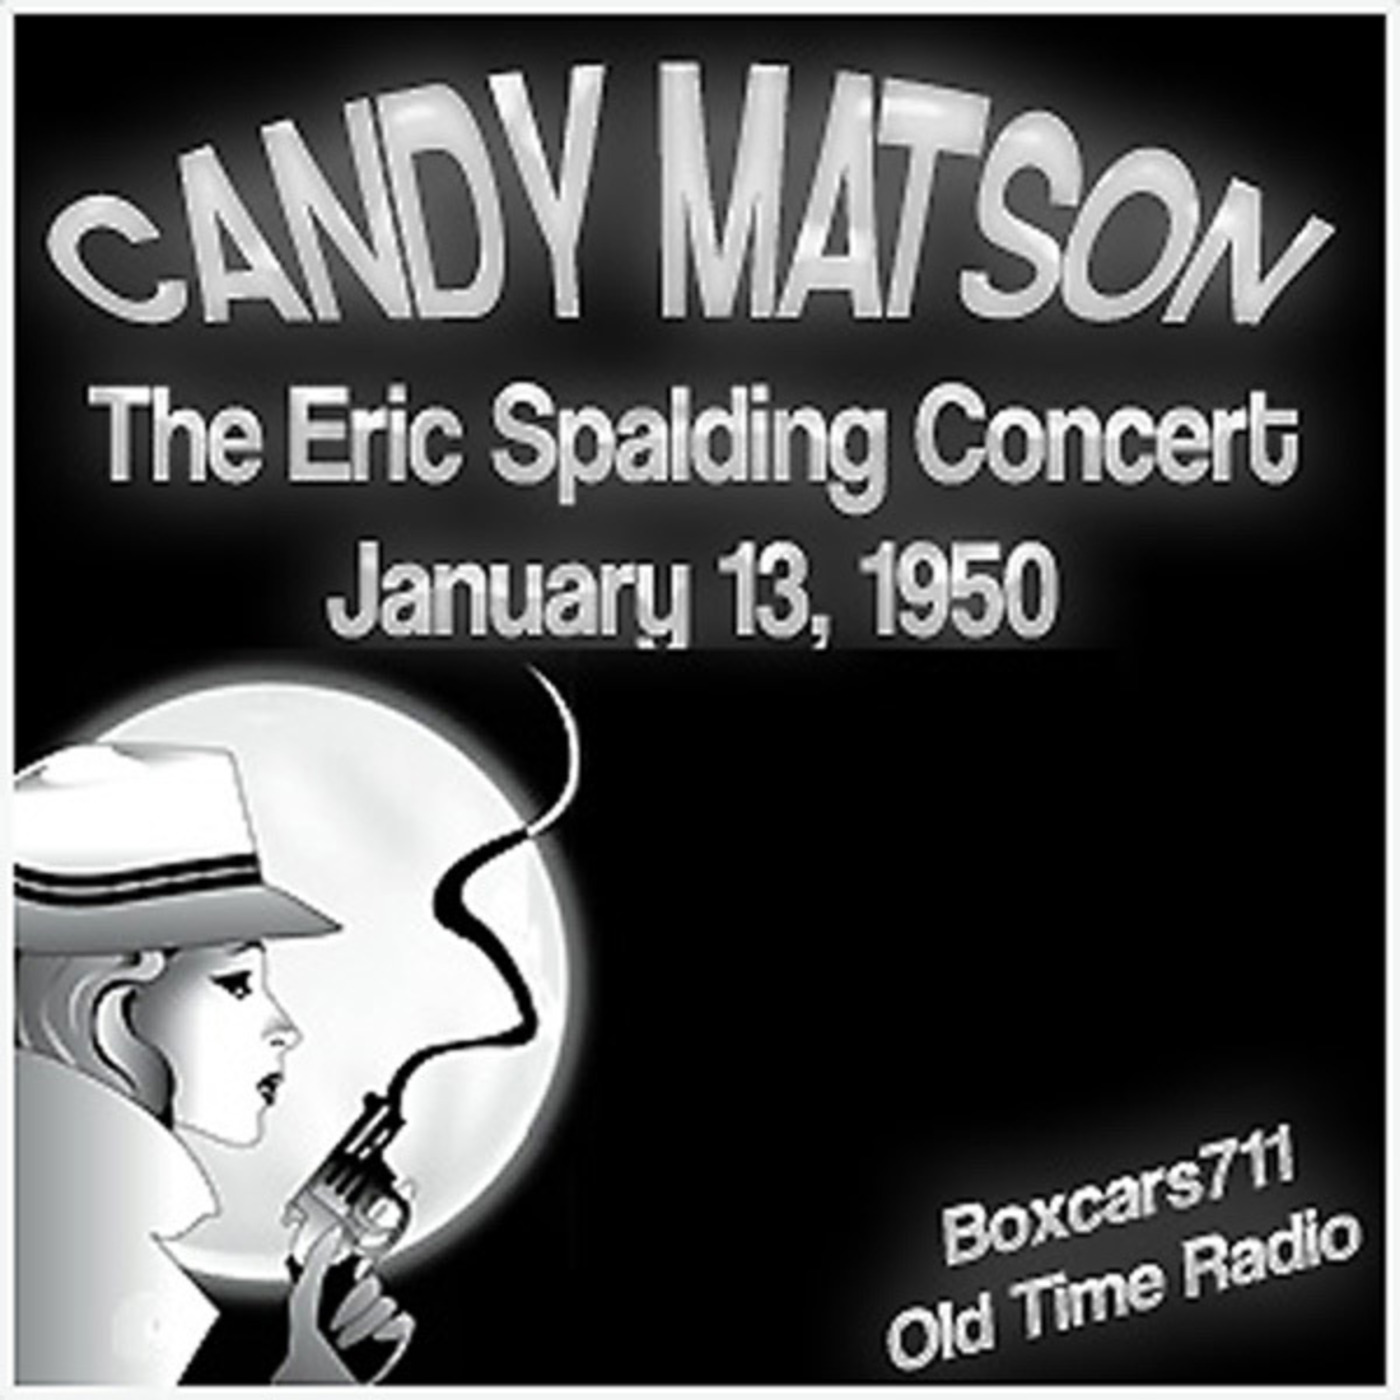 Episode 9606: Candy Matson - 